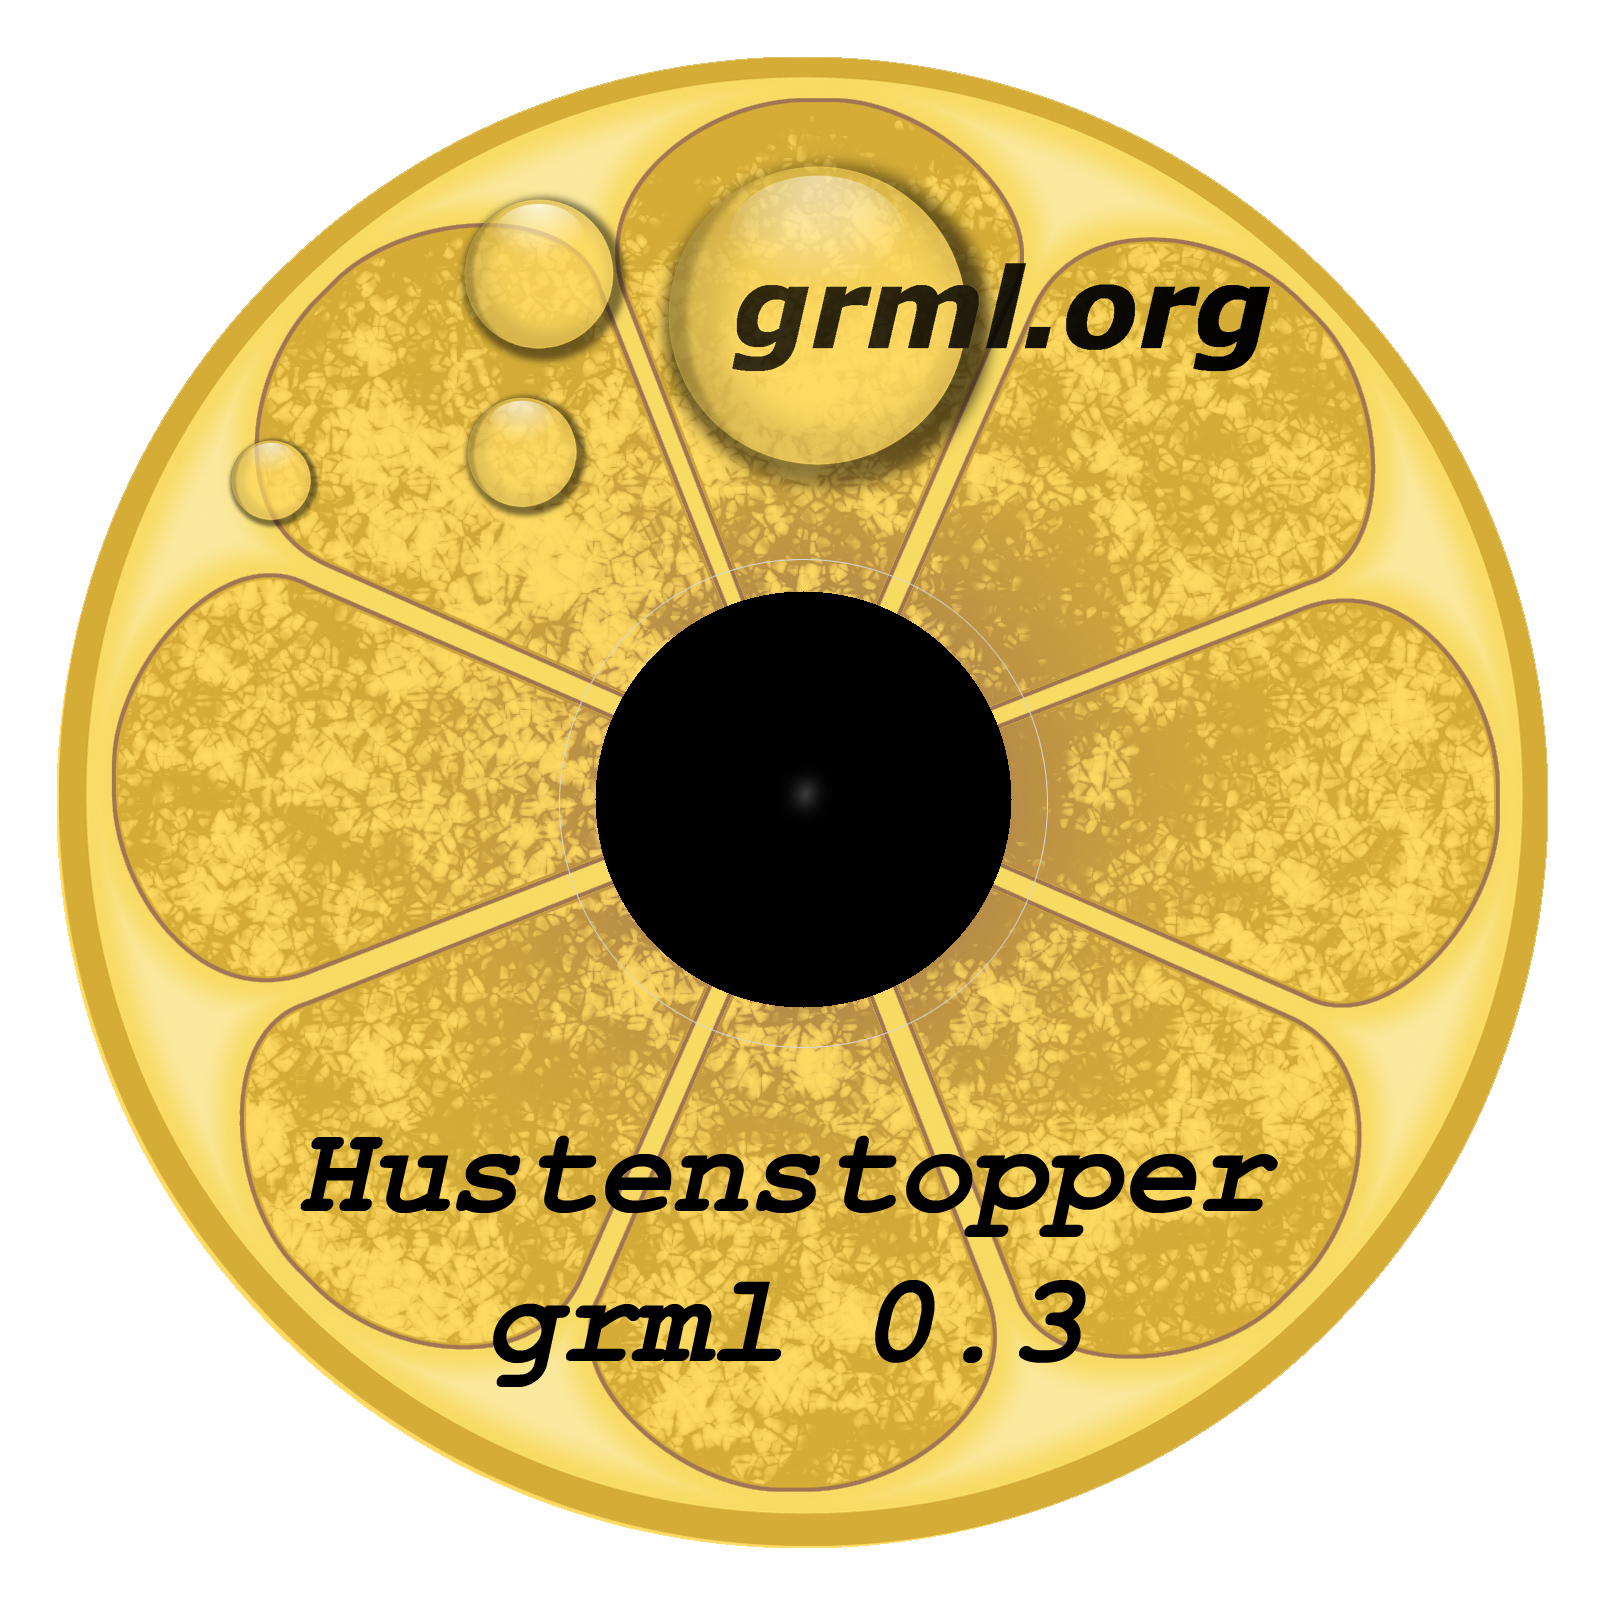 files/design/grml-0.3-hustenstopper.jpg